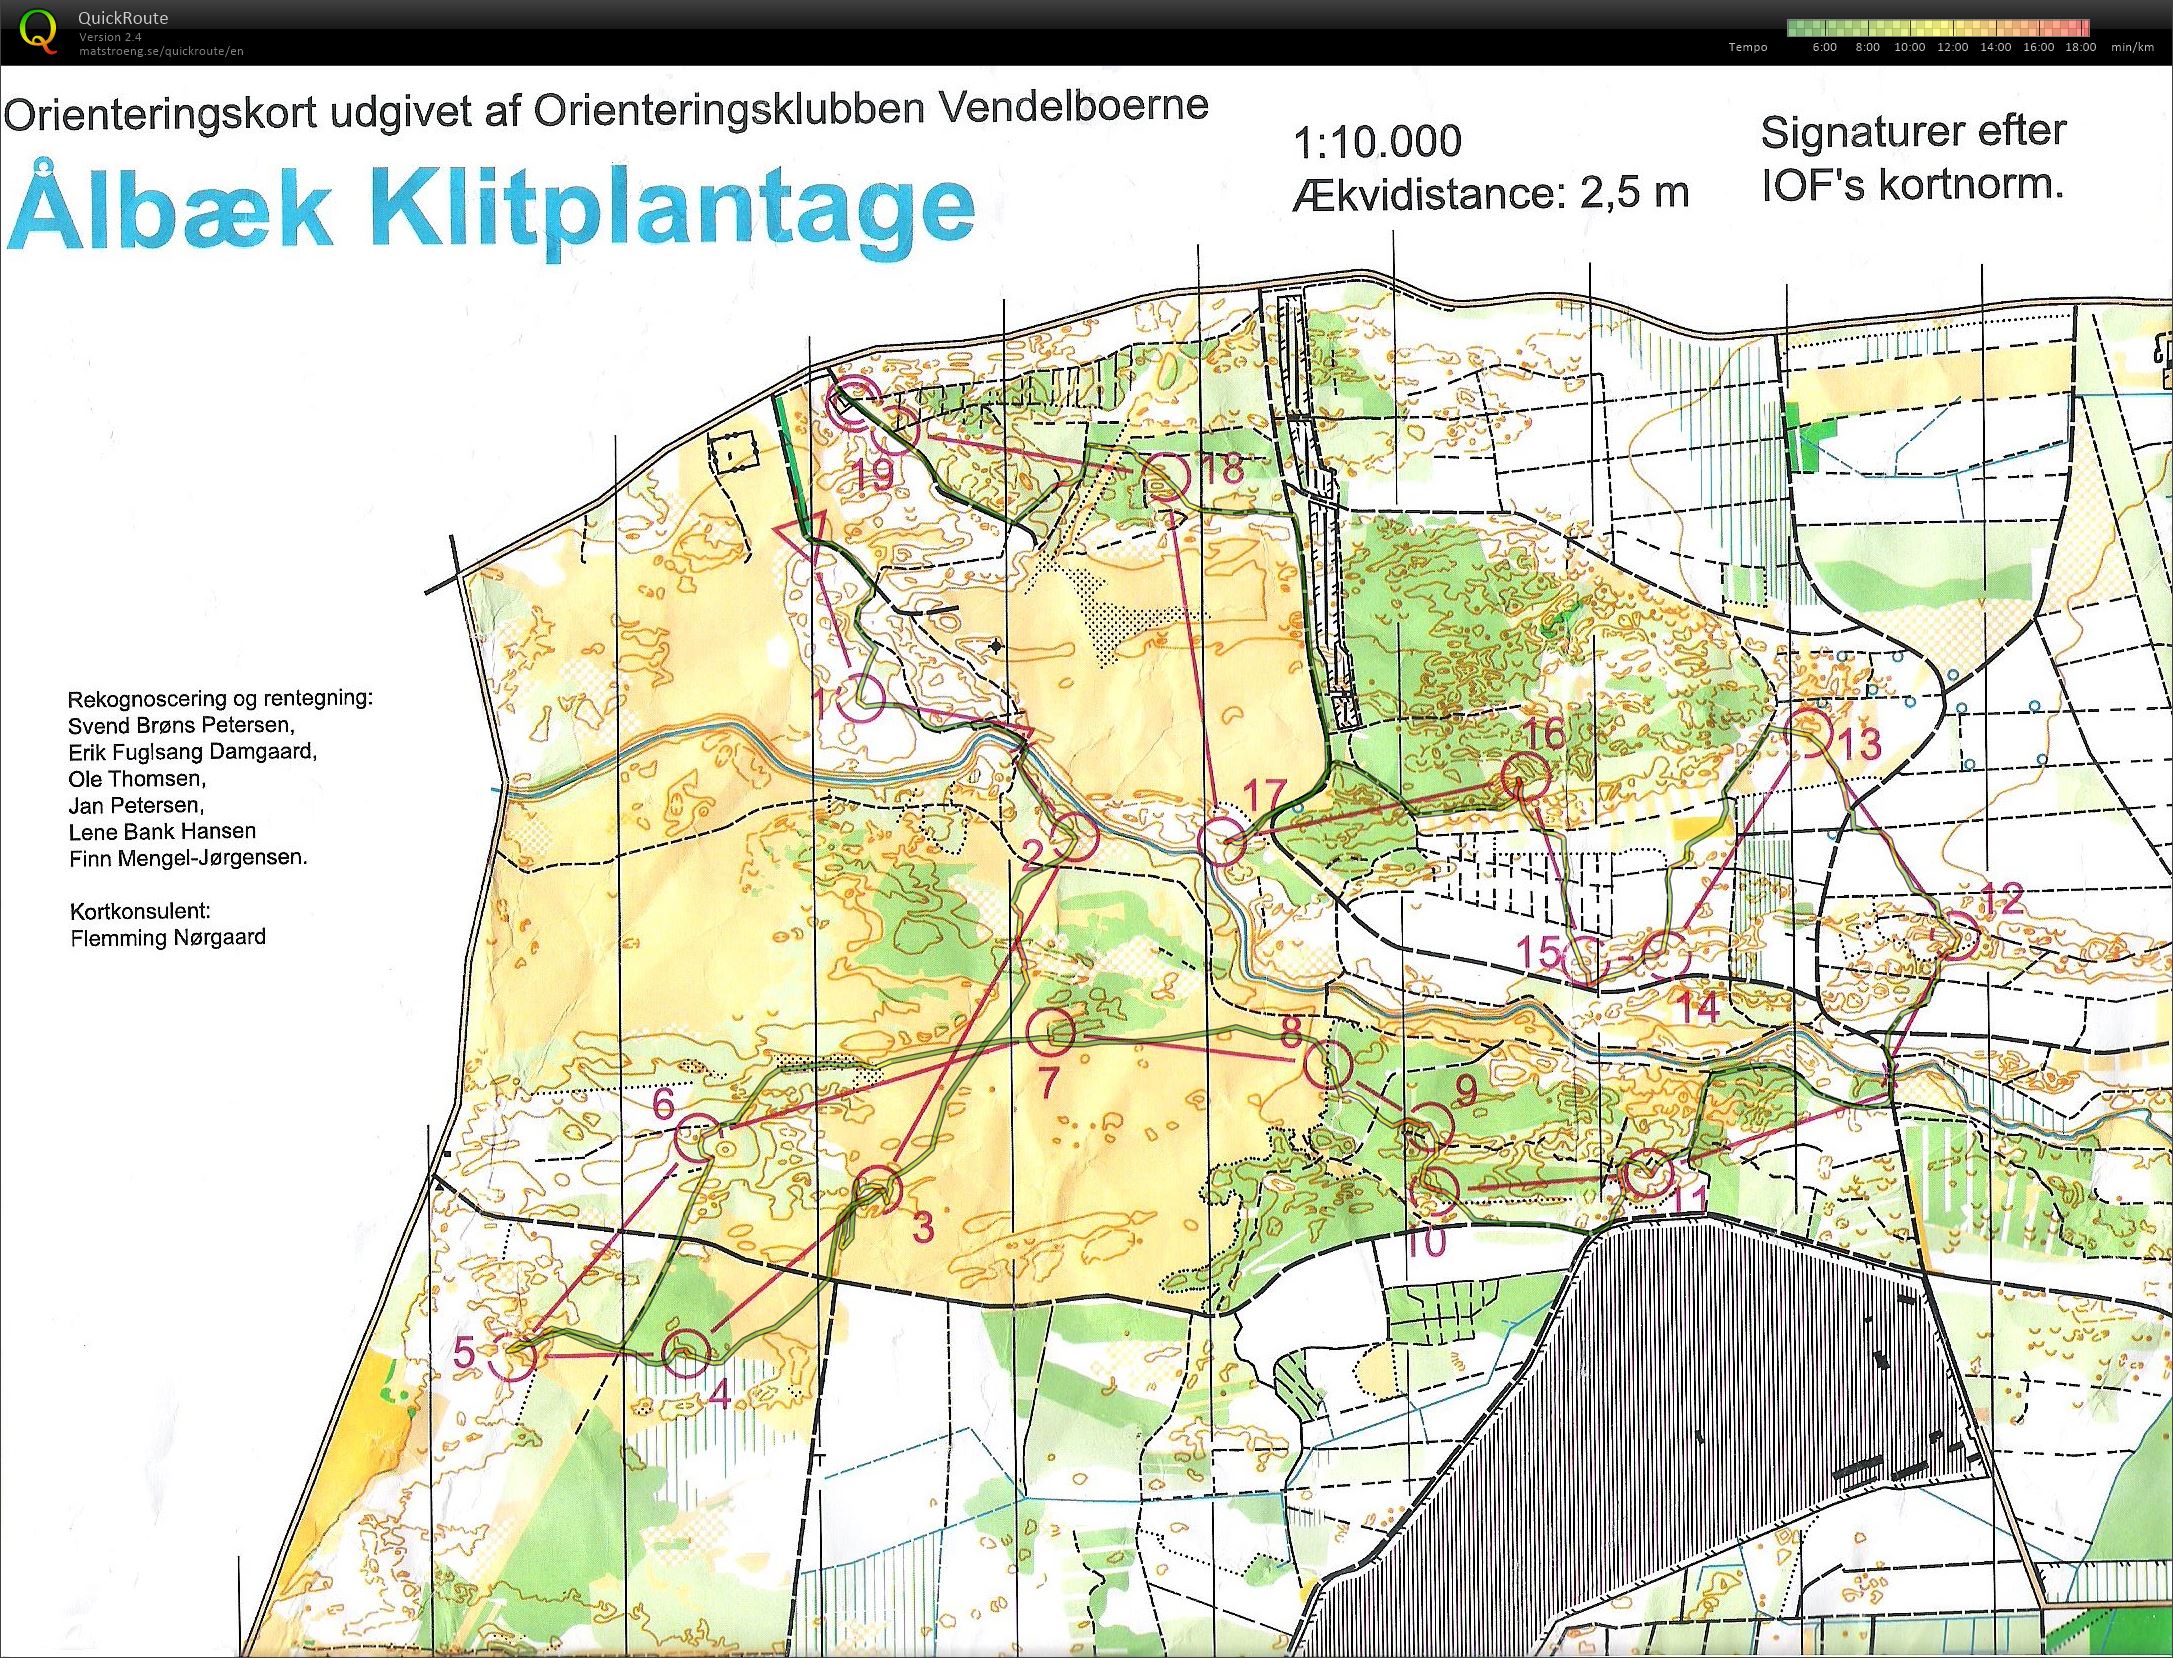 NJM Natløb Ålbæk Klitplantage - H45 - 6.2 km. (2014-09-24)